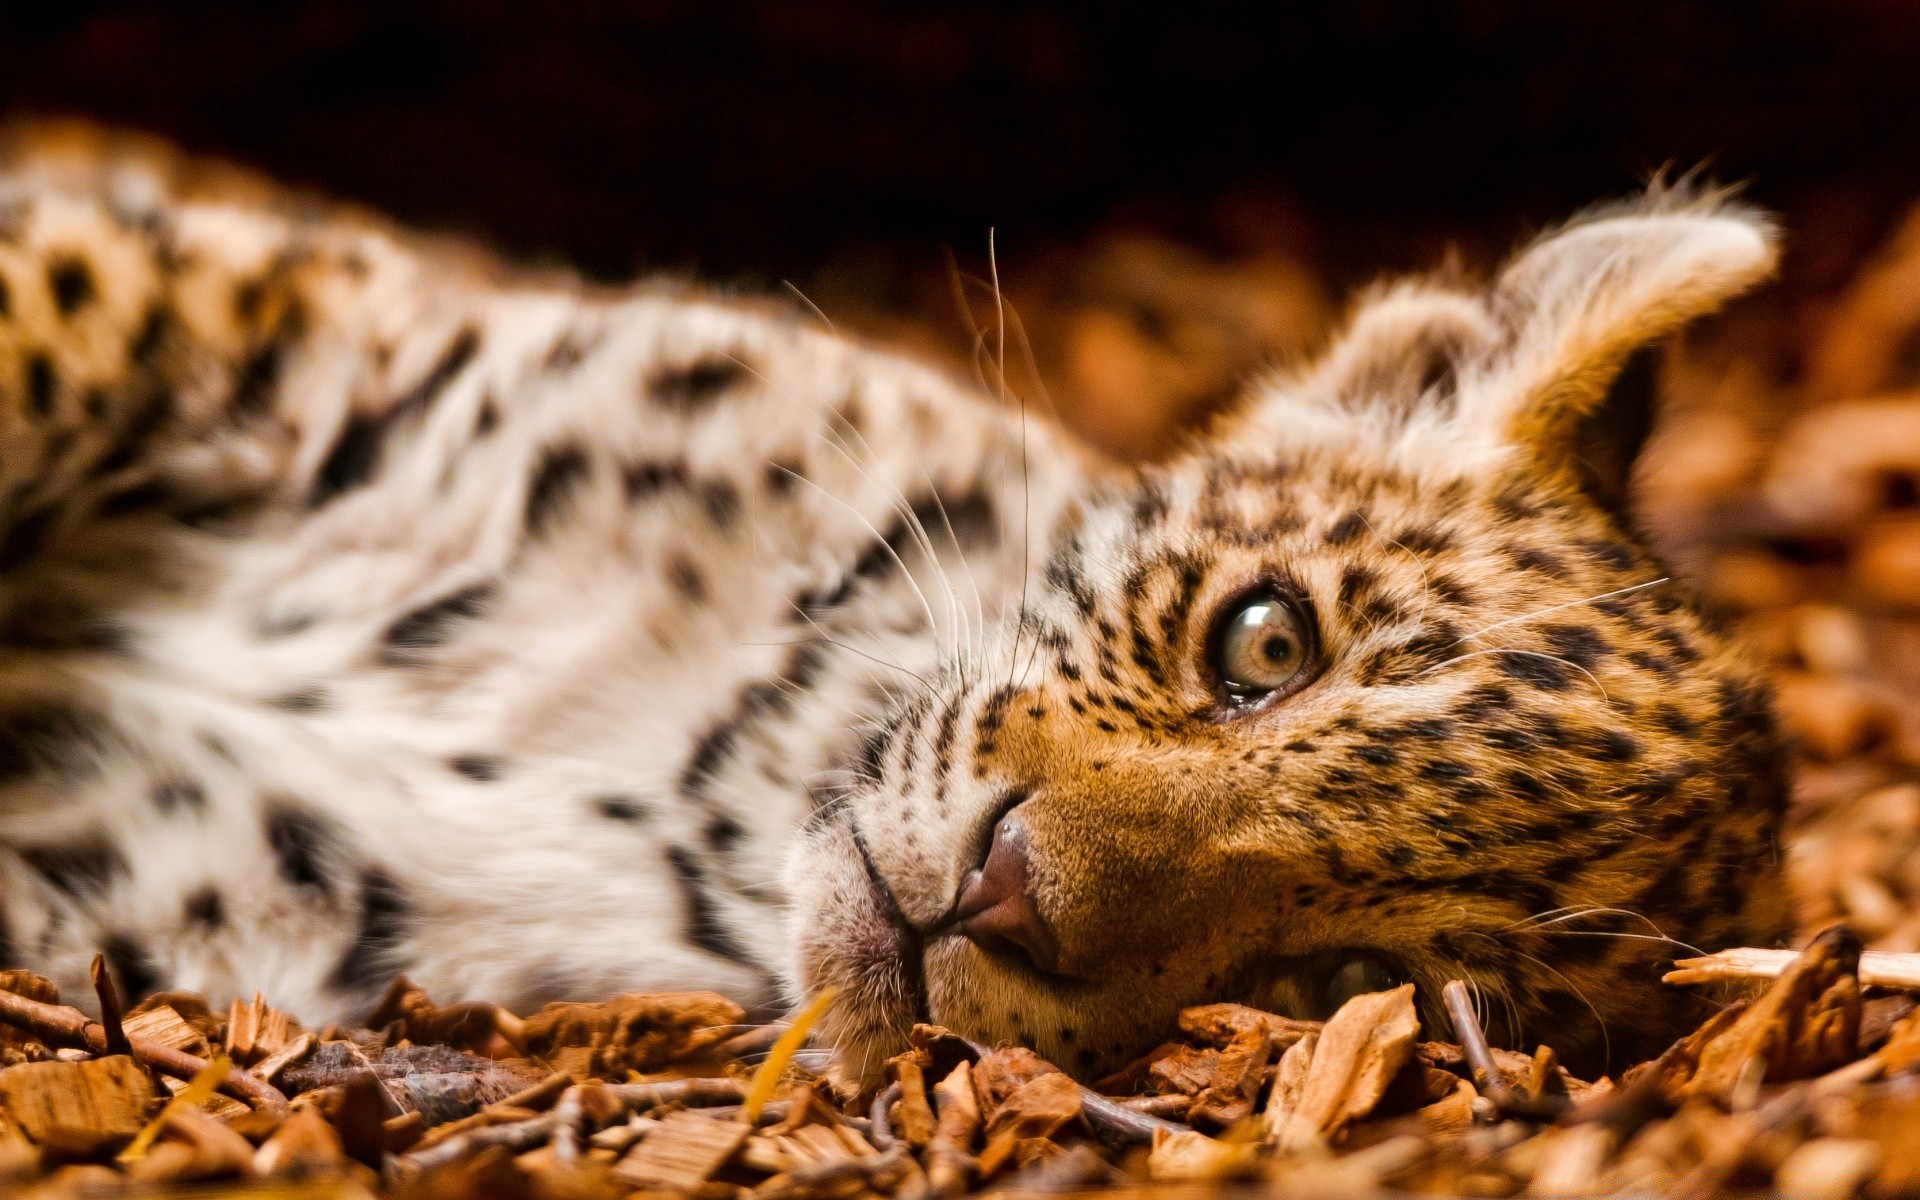 животные дикой природы кошка млекопитающее животное хищник природа дикий леопард зоопарк мясоед мех тигр охотник портрет сафари